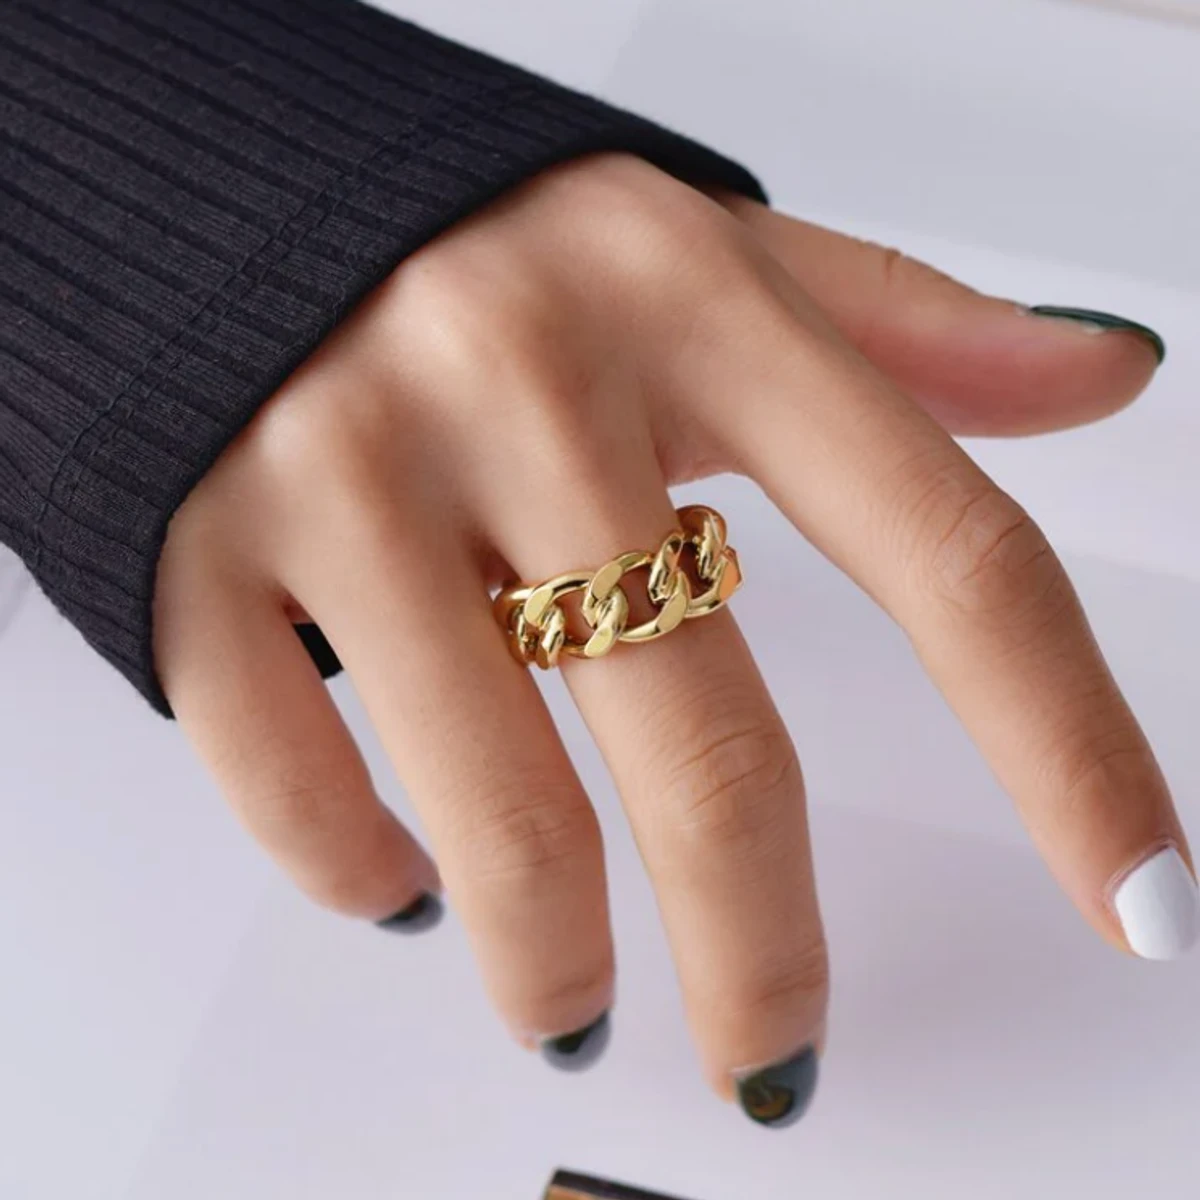 Stainless Steel Fashionable Finger Ring For Men